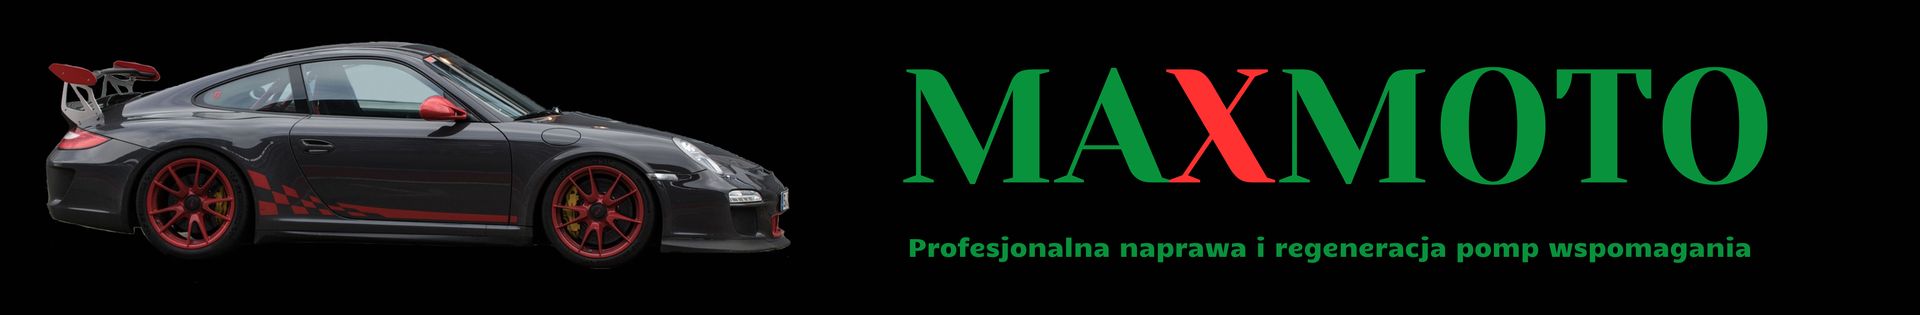 Maxmoto 4x4 Profesjonalna naprawa i regenereacja pomp wspomagania GWARANCJA top banner